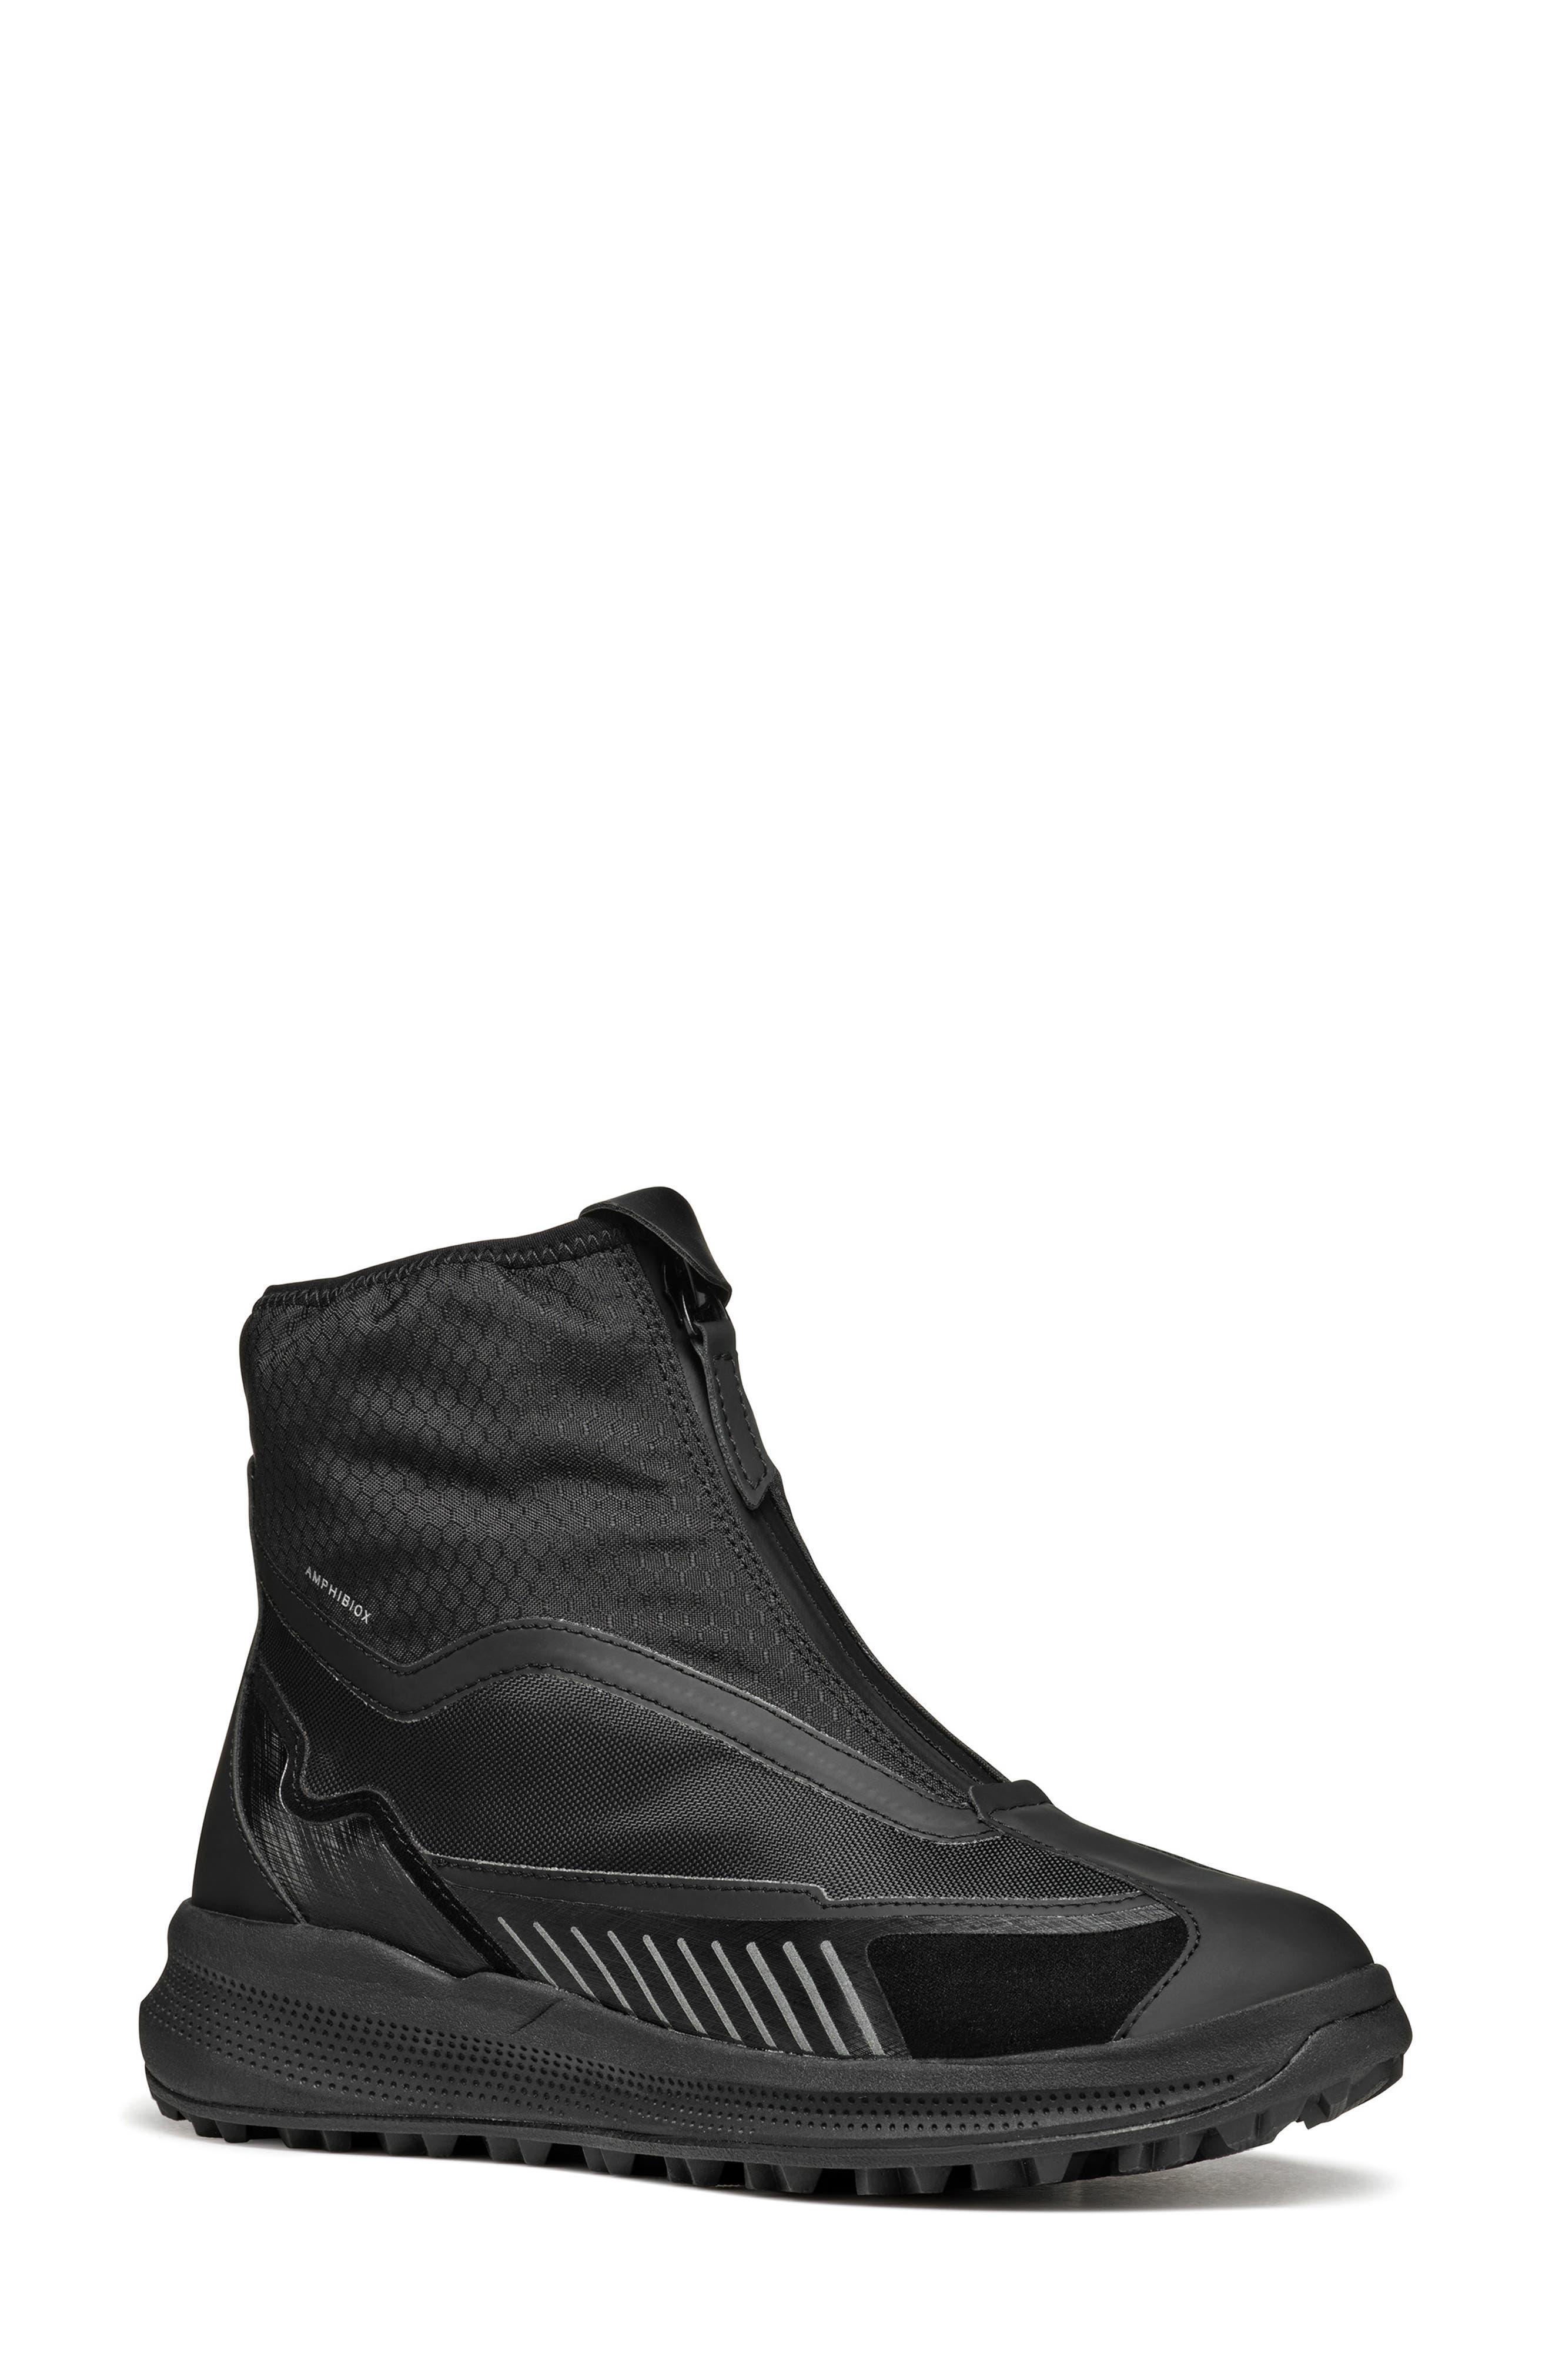 Geox Pg1x Amphibiox® Waterproof Sneaker Boot in Black | Lyst